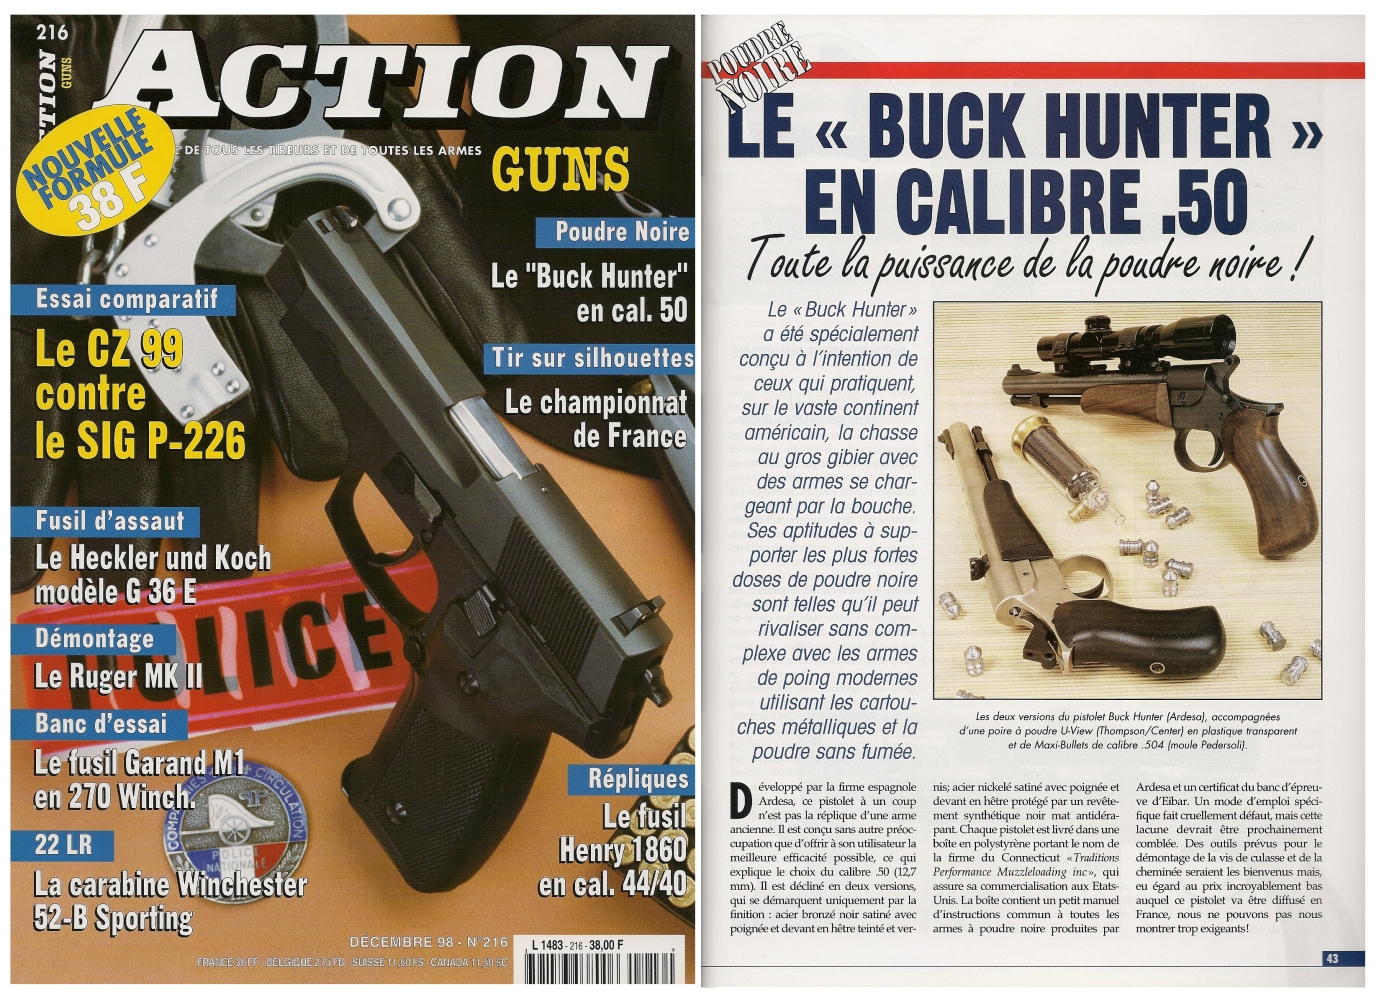 Le banc d’essai du pistolet à poudre noire Buck Hunter a été publié sur 5 pages dans le magazine Action Guns n°216 (décembre 1998). 